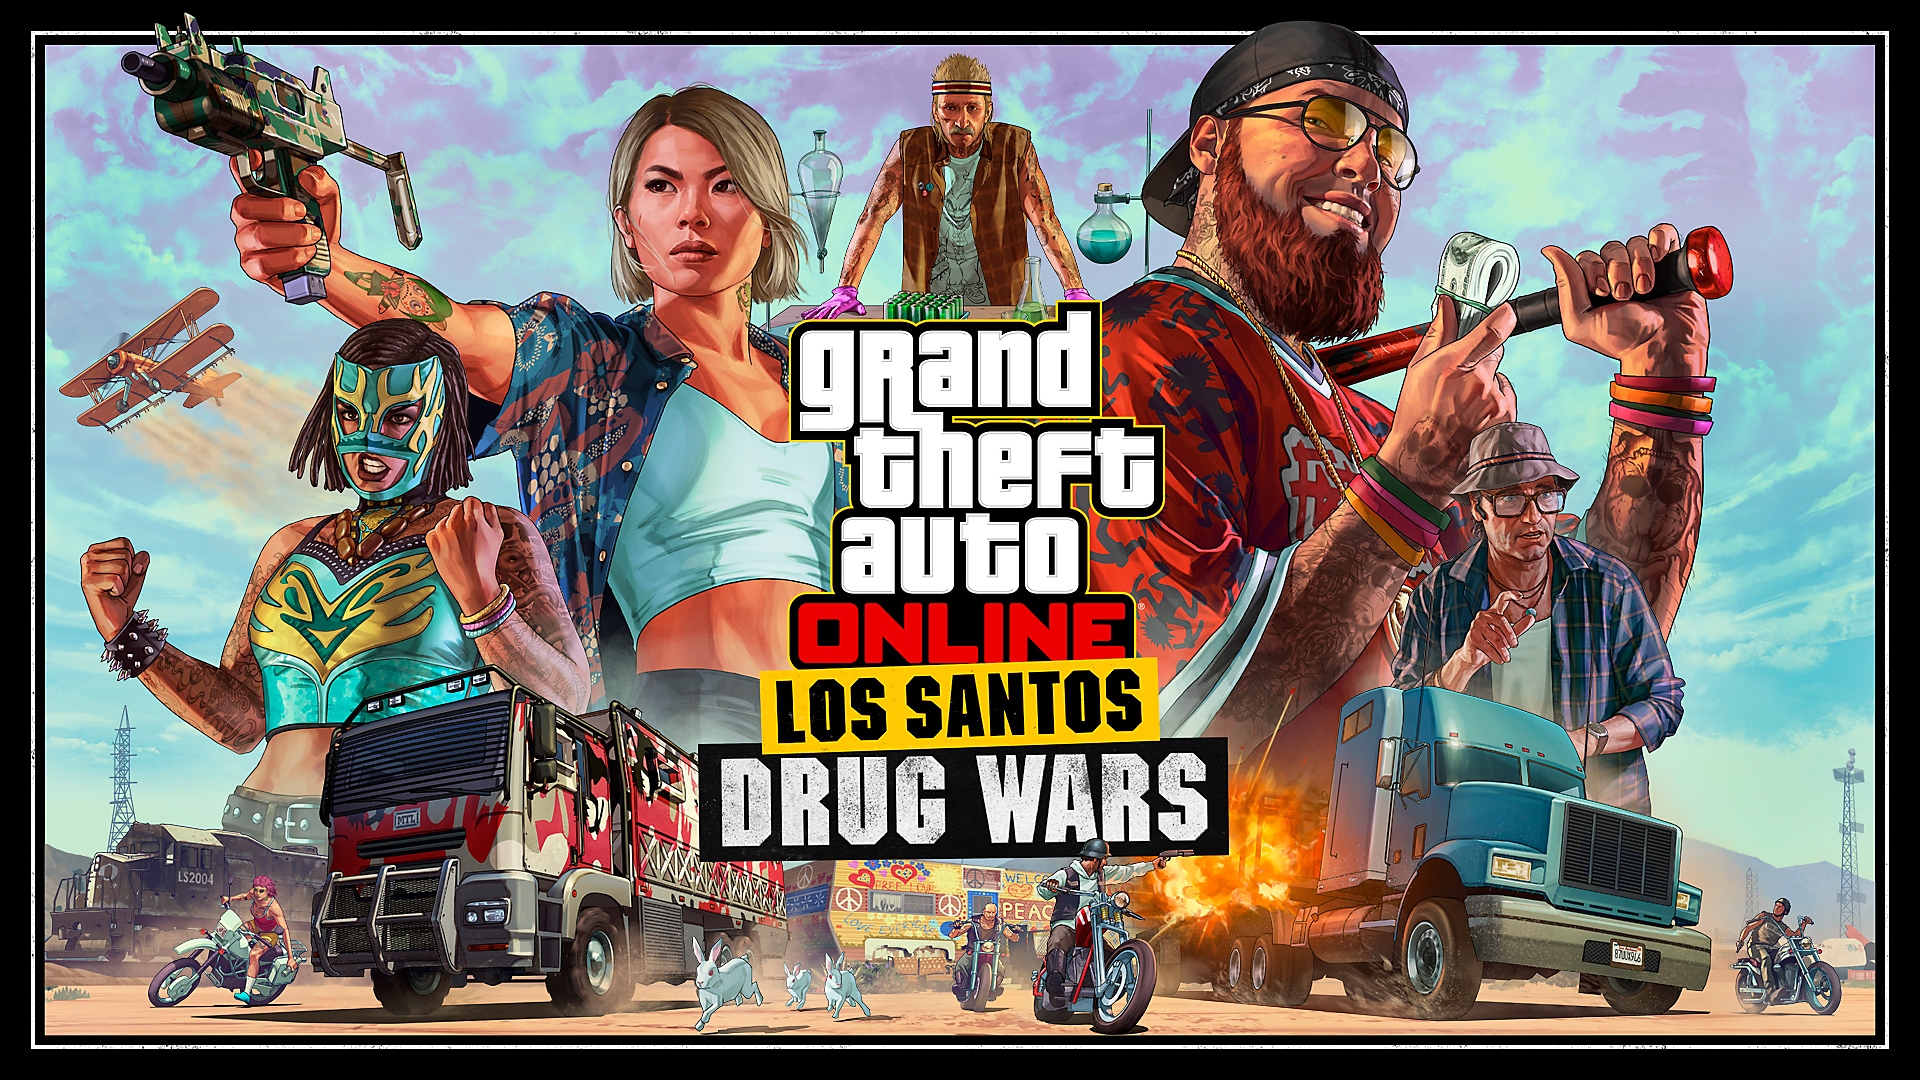 Grand Theft Auto Online - Bande-annonce de Los Santos Drug Wars